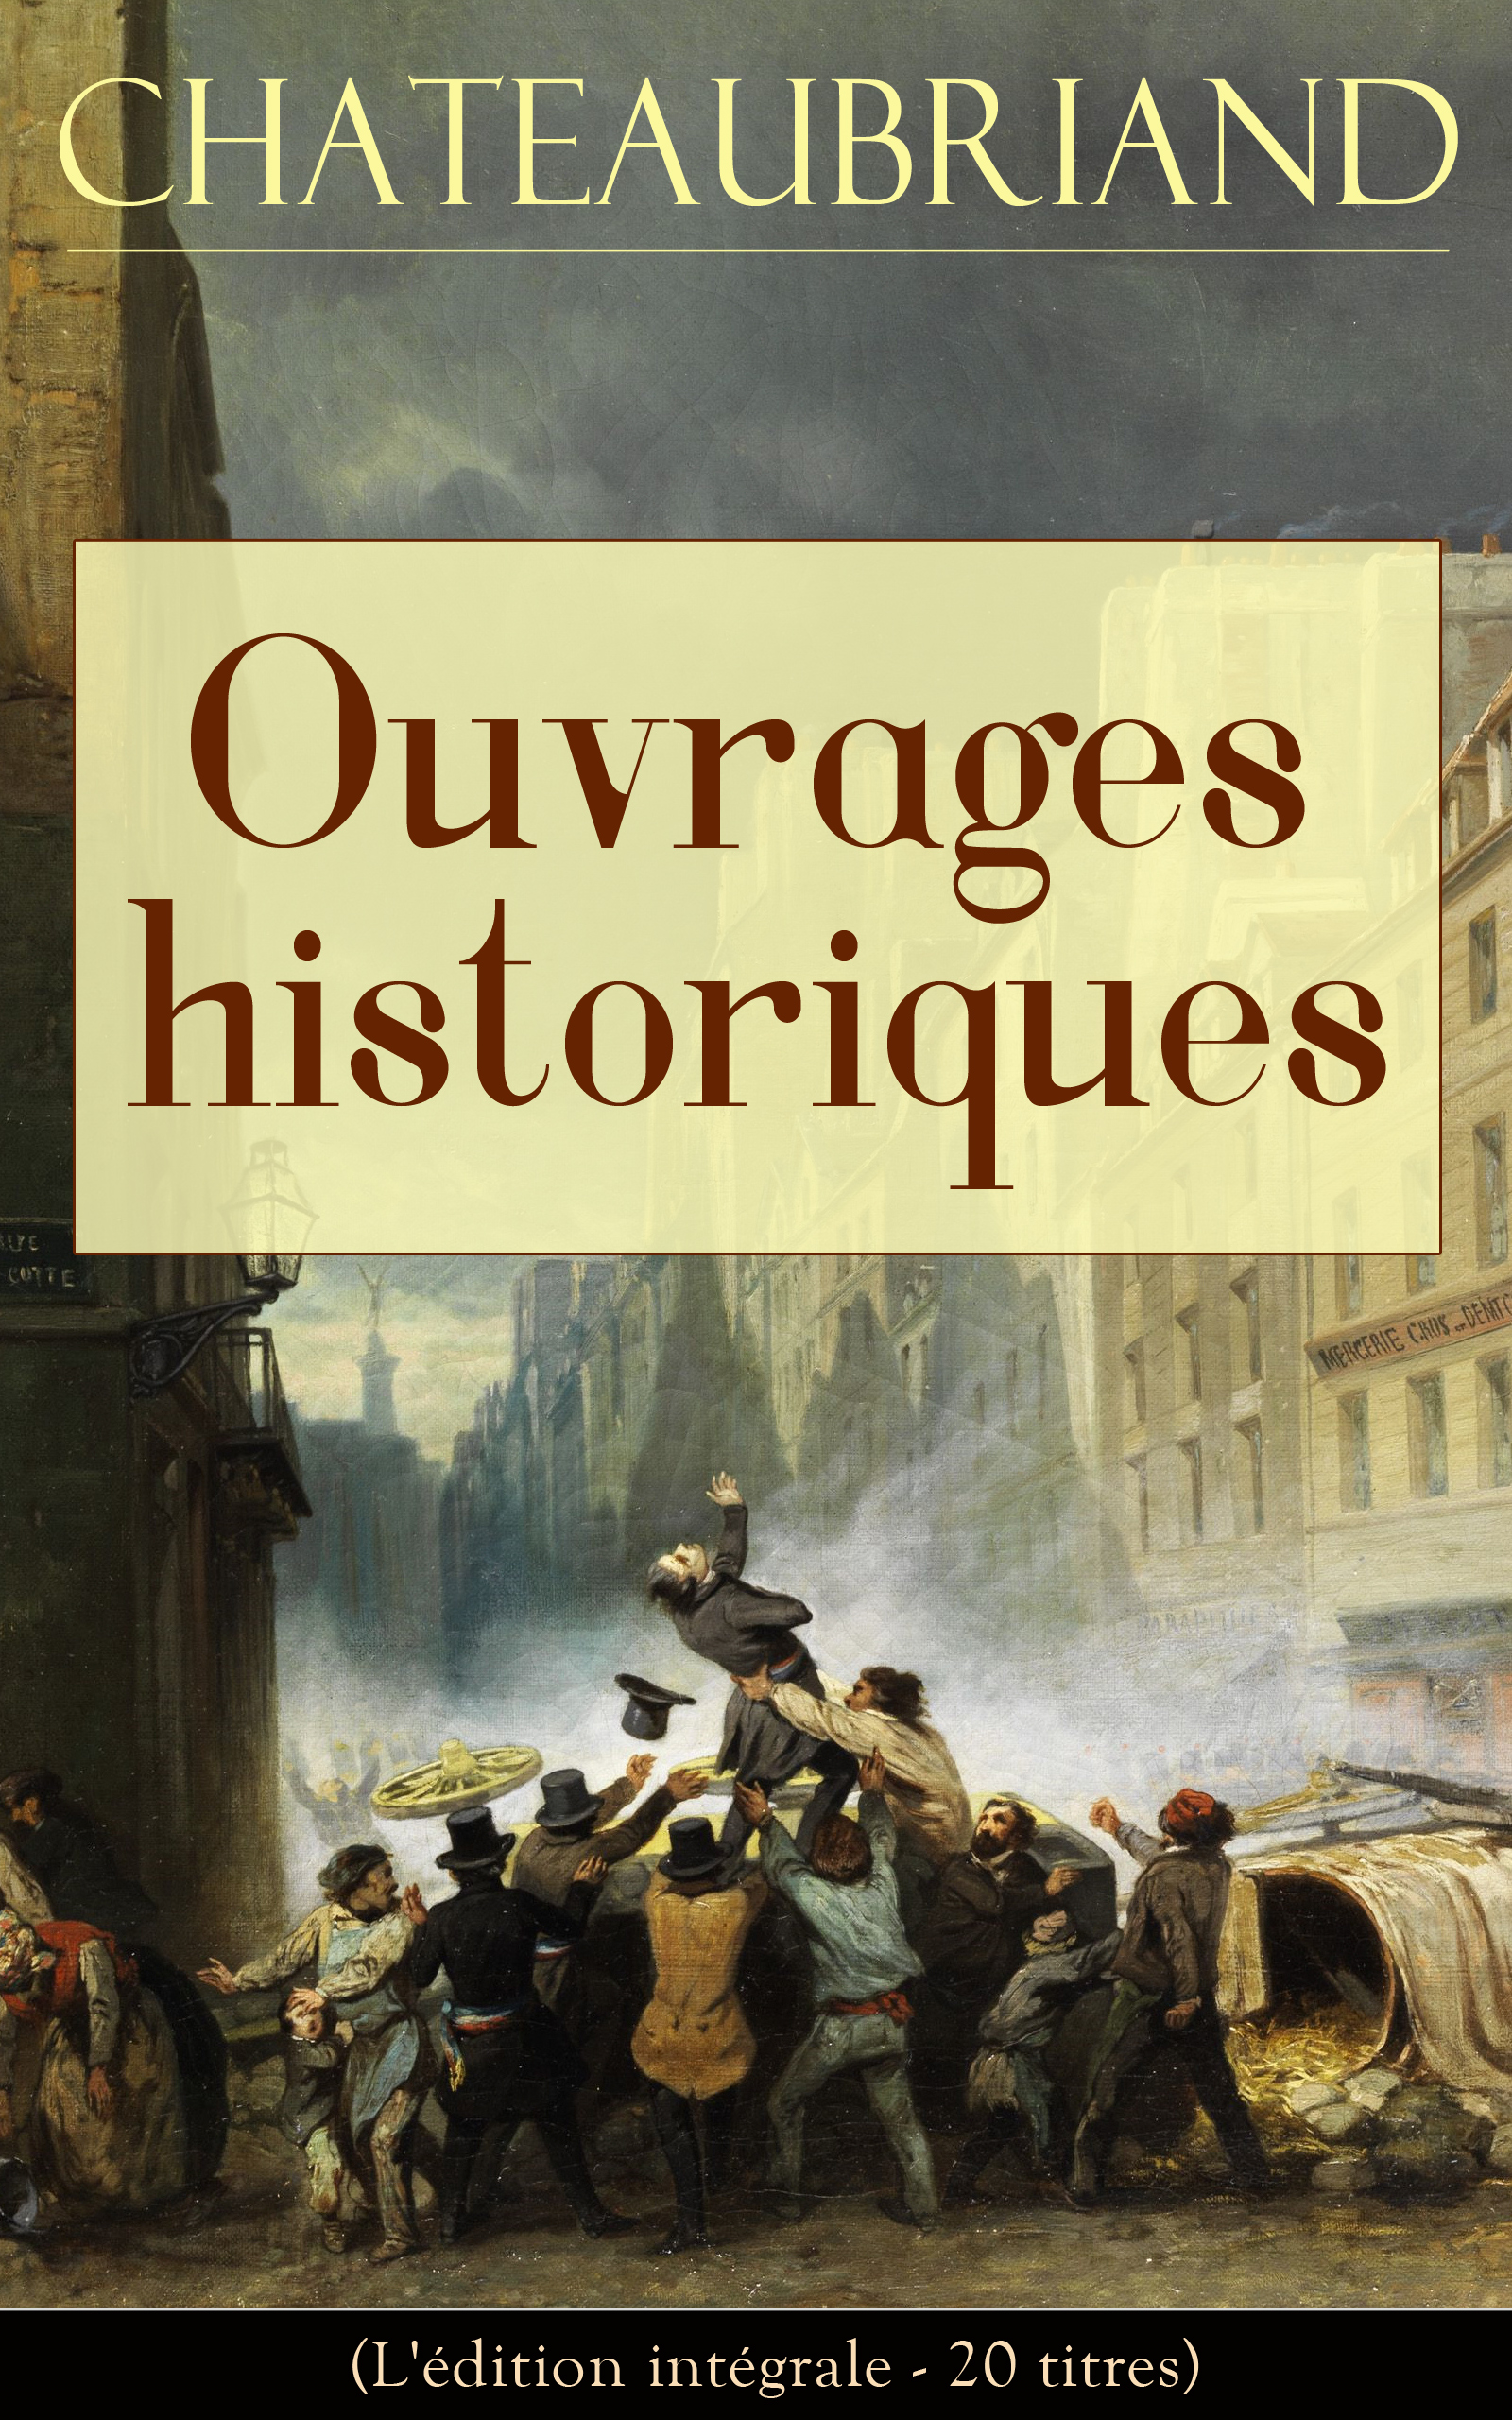 François-René de Chateaubriand Chateaubriand: Ouvrages historiques (L'édition intégrale - 20 titres)